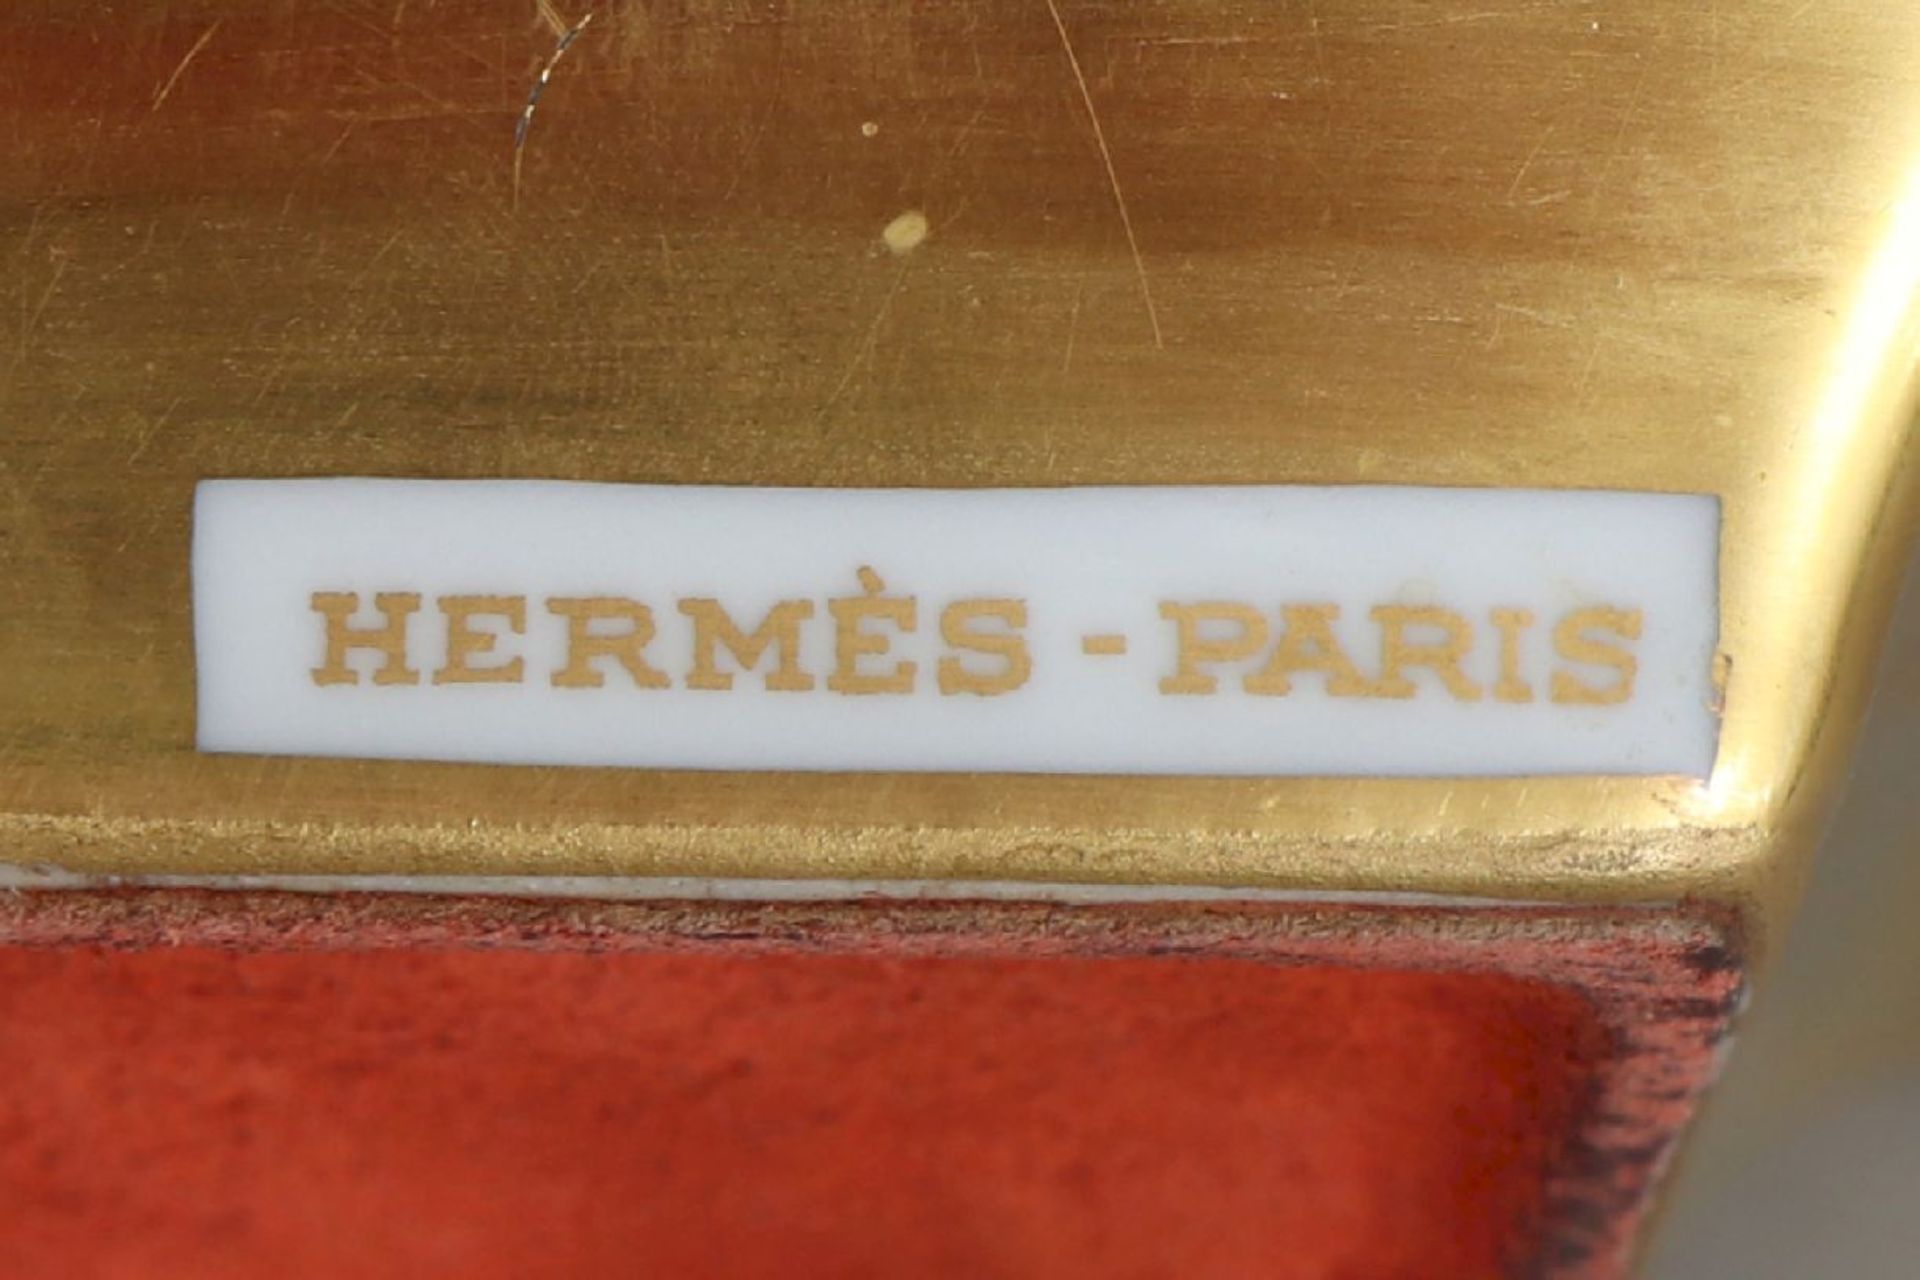 HERMÈS TischascherPorzellan, eckige Form mit 2 seitlichen Zigarettenmulden, im Spiegel - Bild 5 aus 5